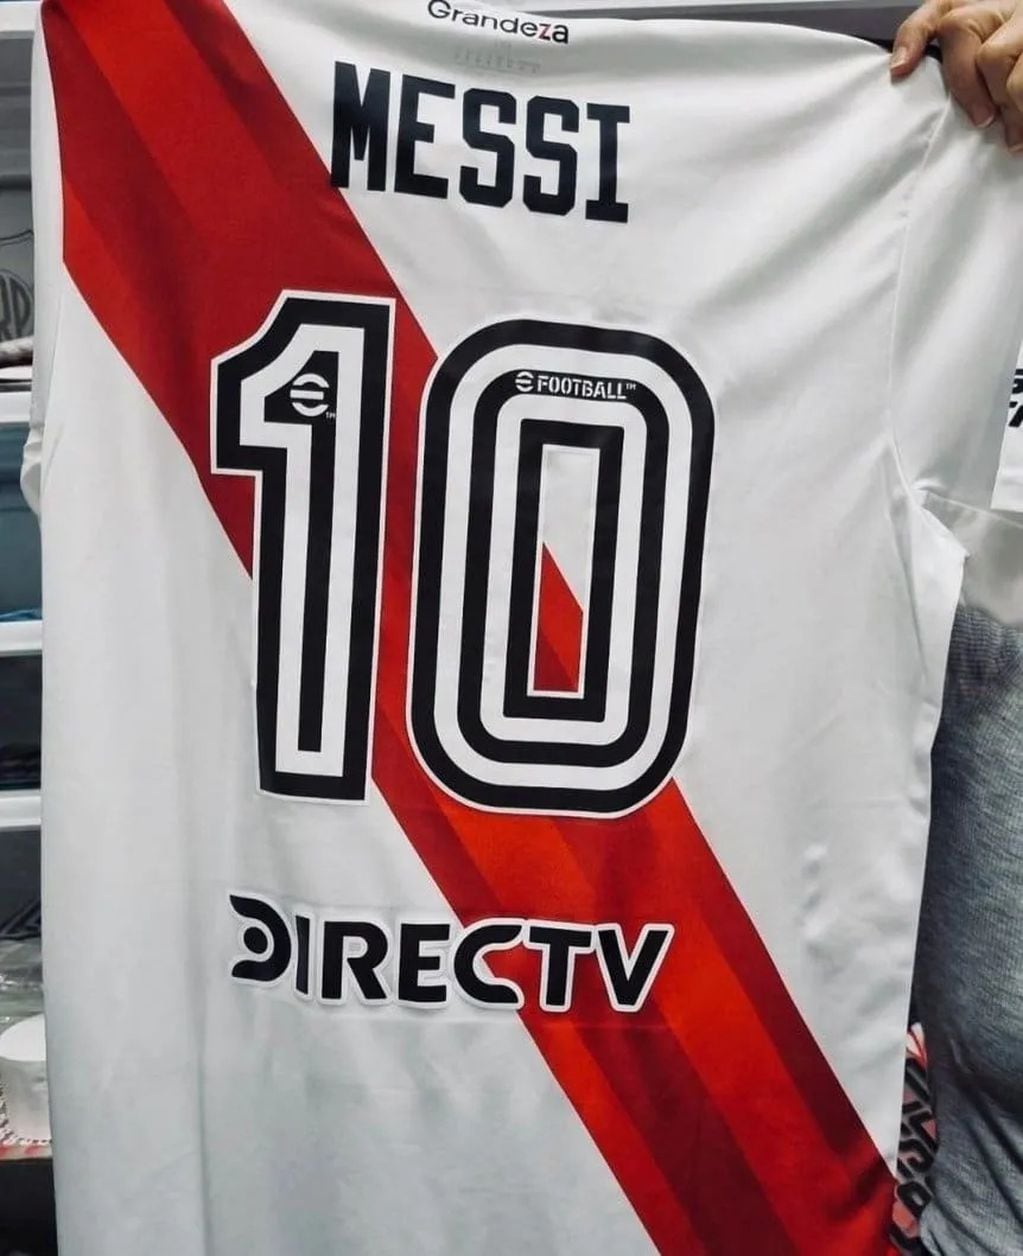 El regalo que la Comisión Directiva de River Plate le entregará a Lionel Messi. / Gentileza.